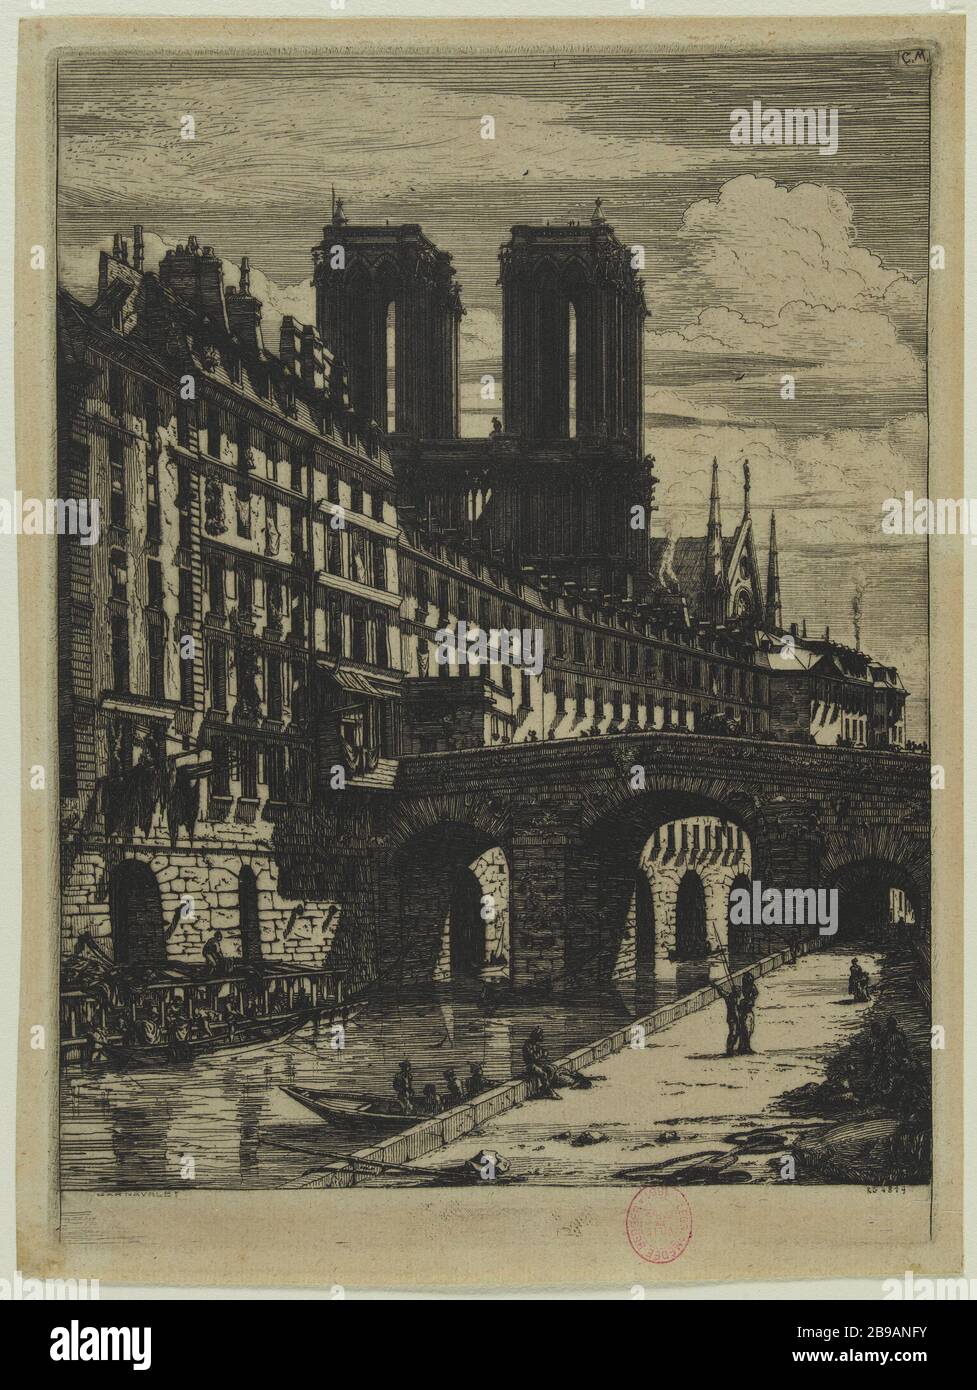 KLEINE BRÜCKE Charles Meryon (1821-1868). "Le petit pont". Eau-forte, 1850. Paris, musée Carnavalet. Stockfoto